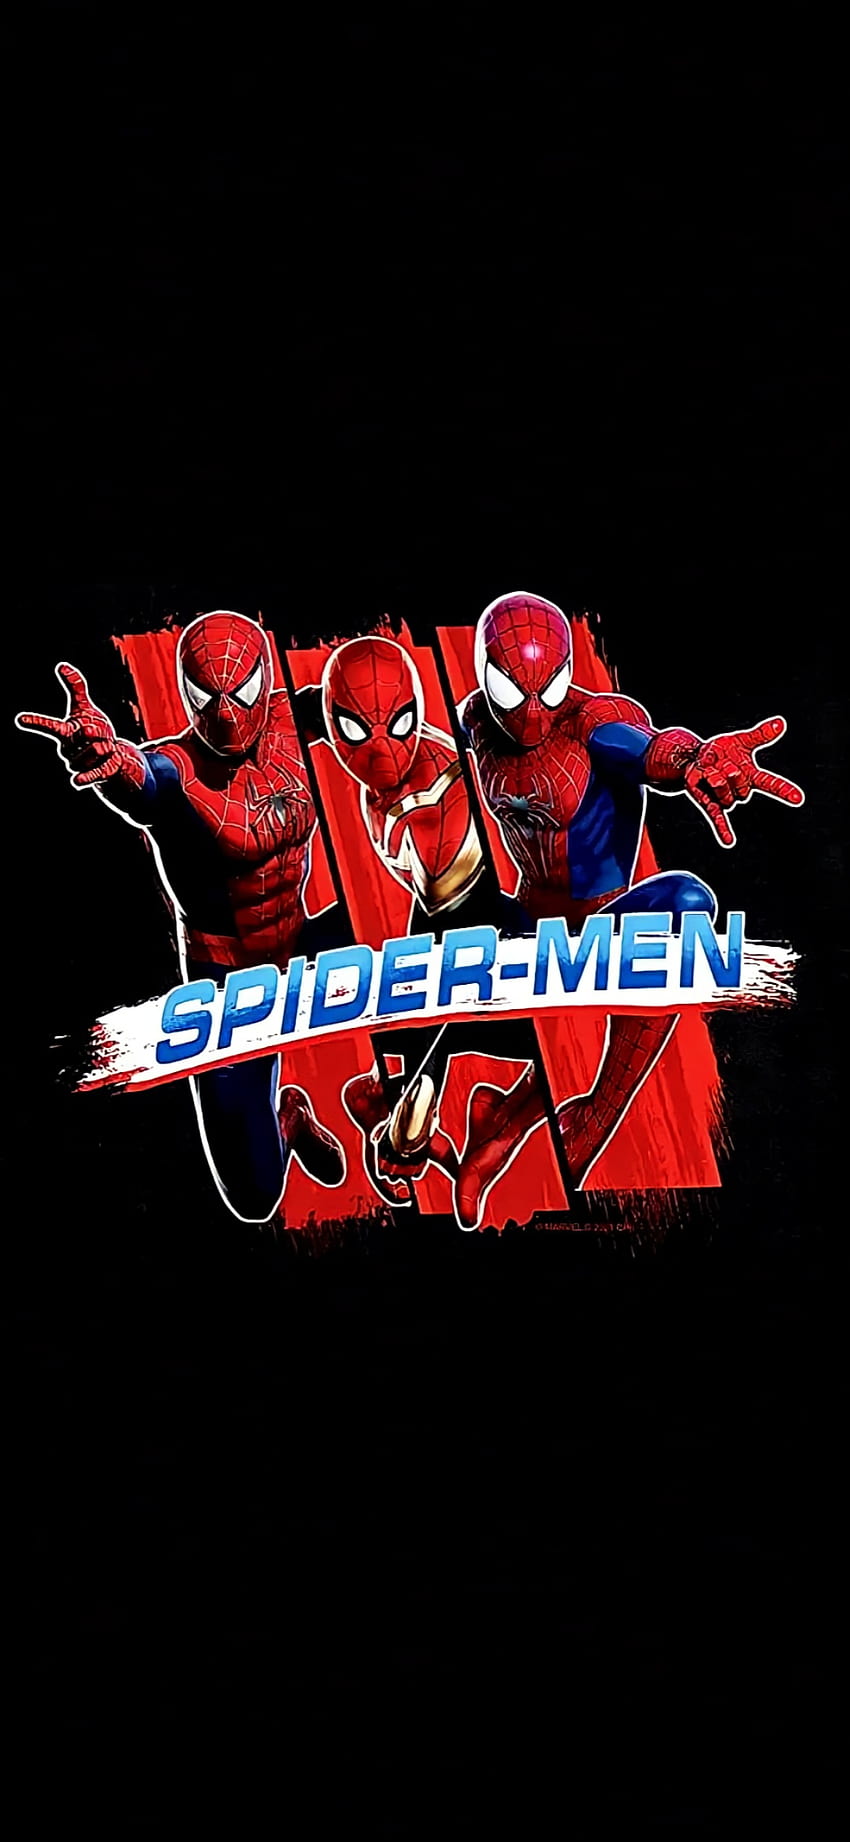 Spider-Men NWH, Spider-Man, Tobey Maguire, No way home, Spider-Man, Tom Holland, Andrew Garfield, Spider-Man, Spiderverse, Marvel, Spiderman Tapeta na telefon HD